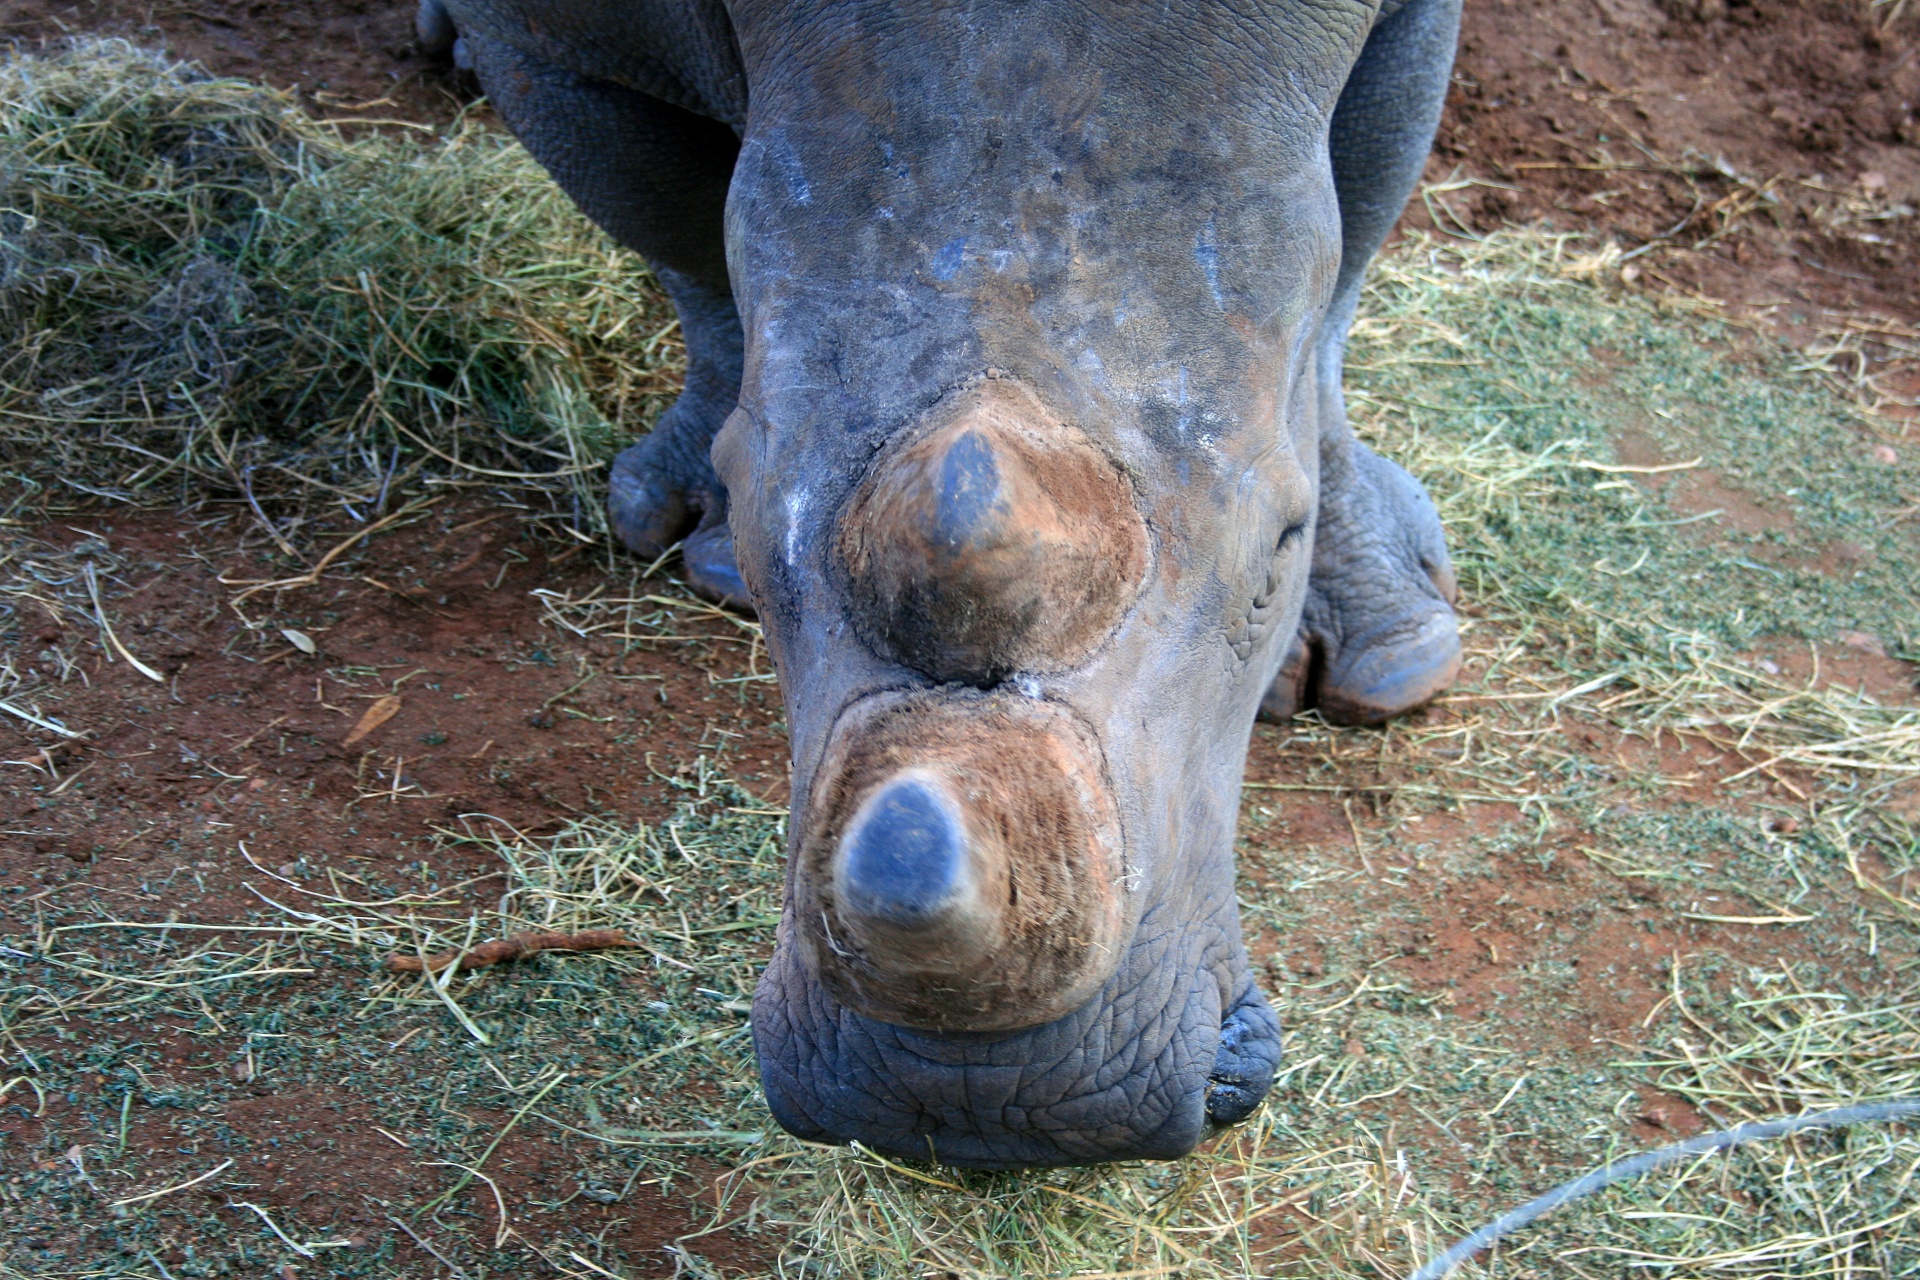 Horn Stumps Of White Rhinoceros